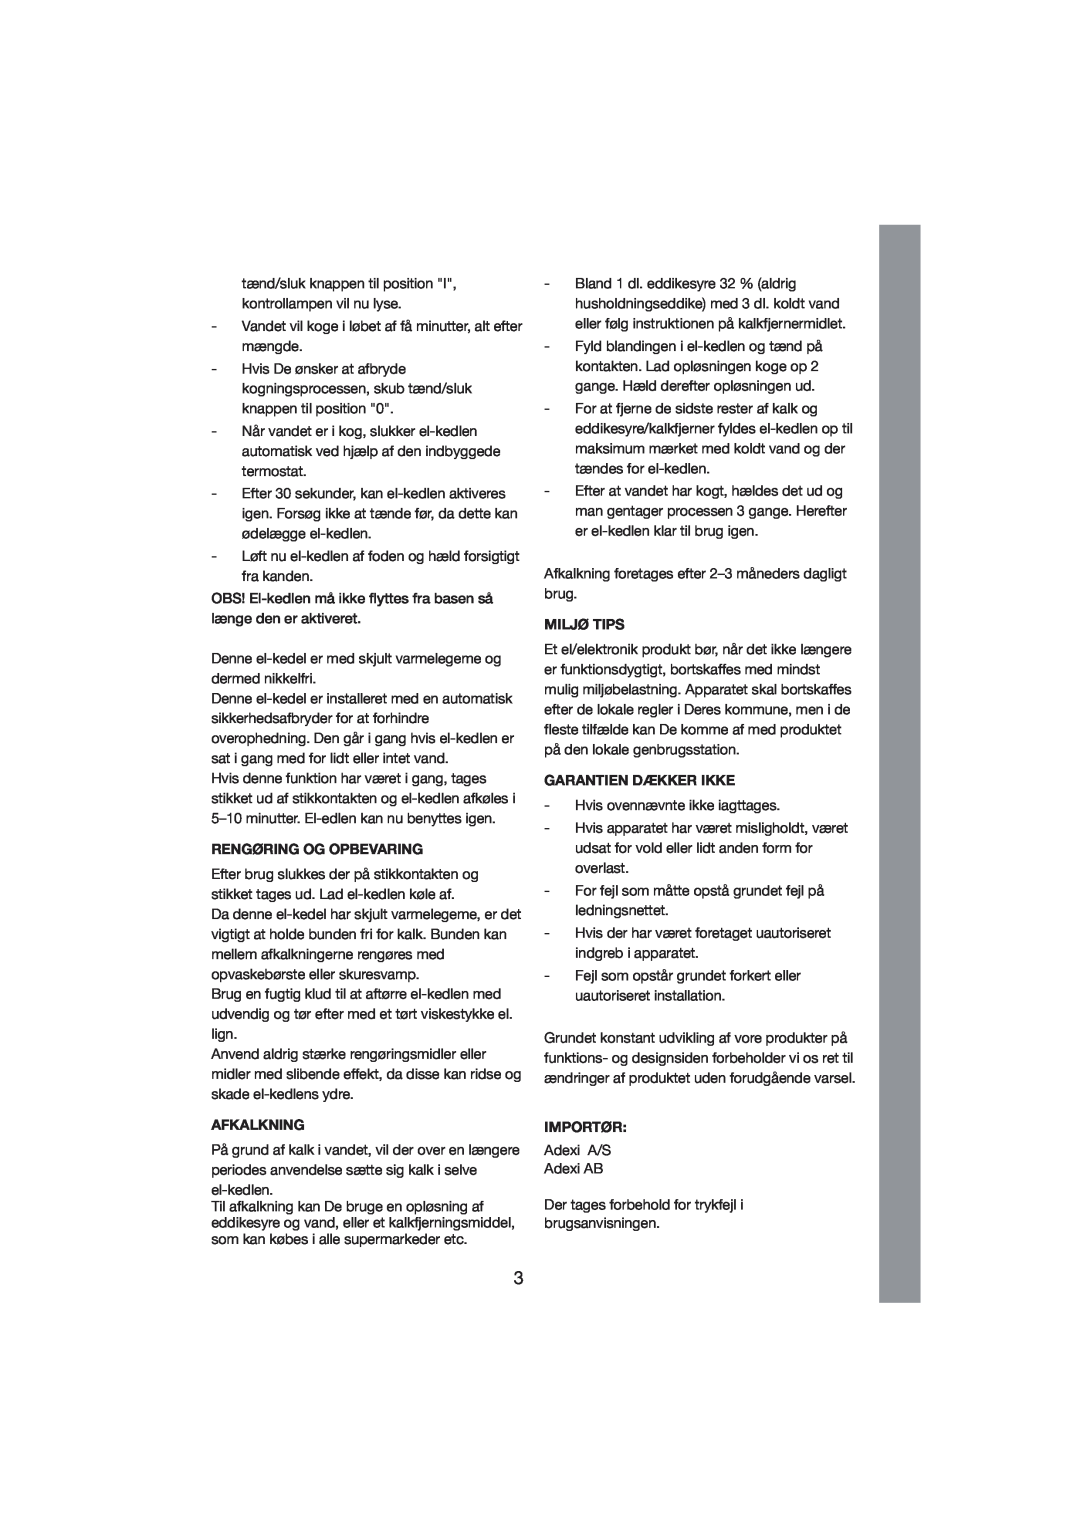 Melissa 245-023 manual Rengøring Og Opbevaring, Afkalkning, Miljø Tips, Garantien Dækker Ikke, Importør 